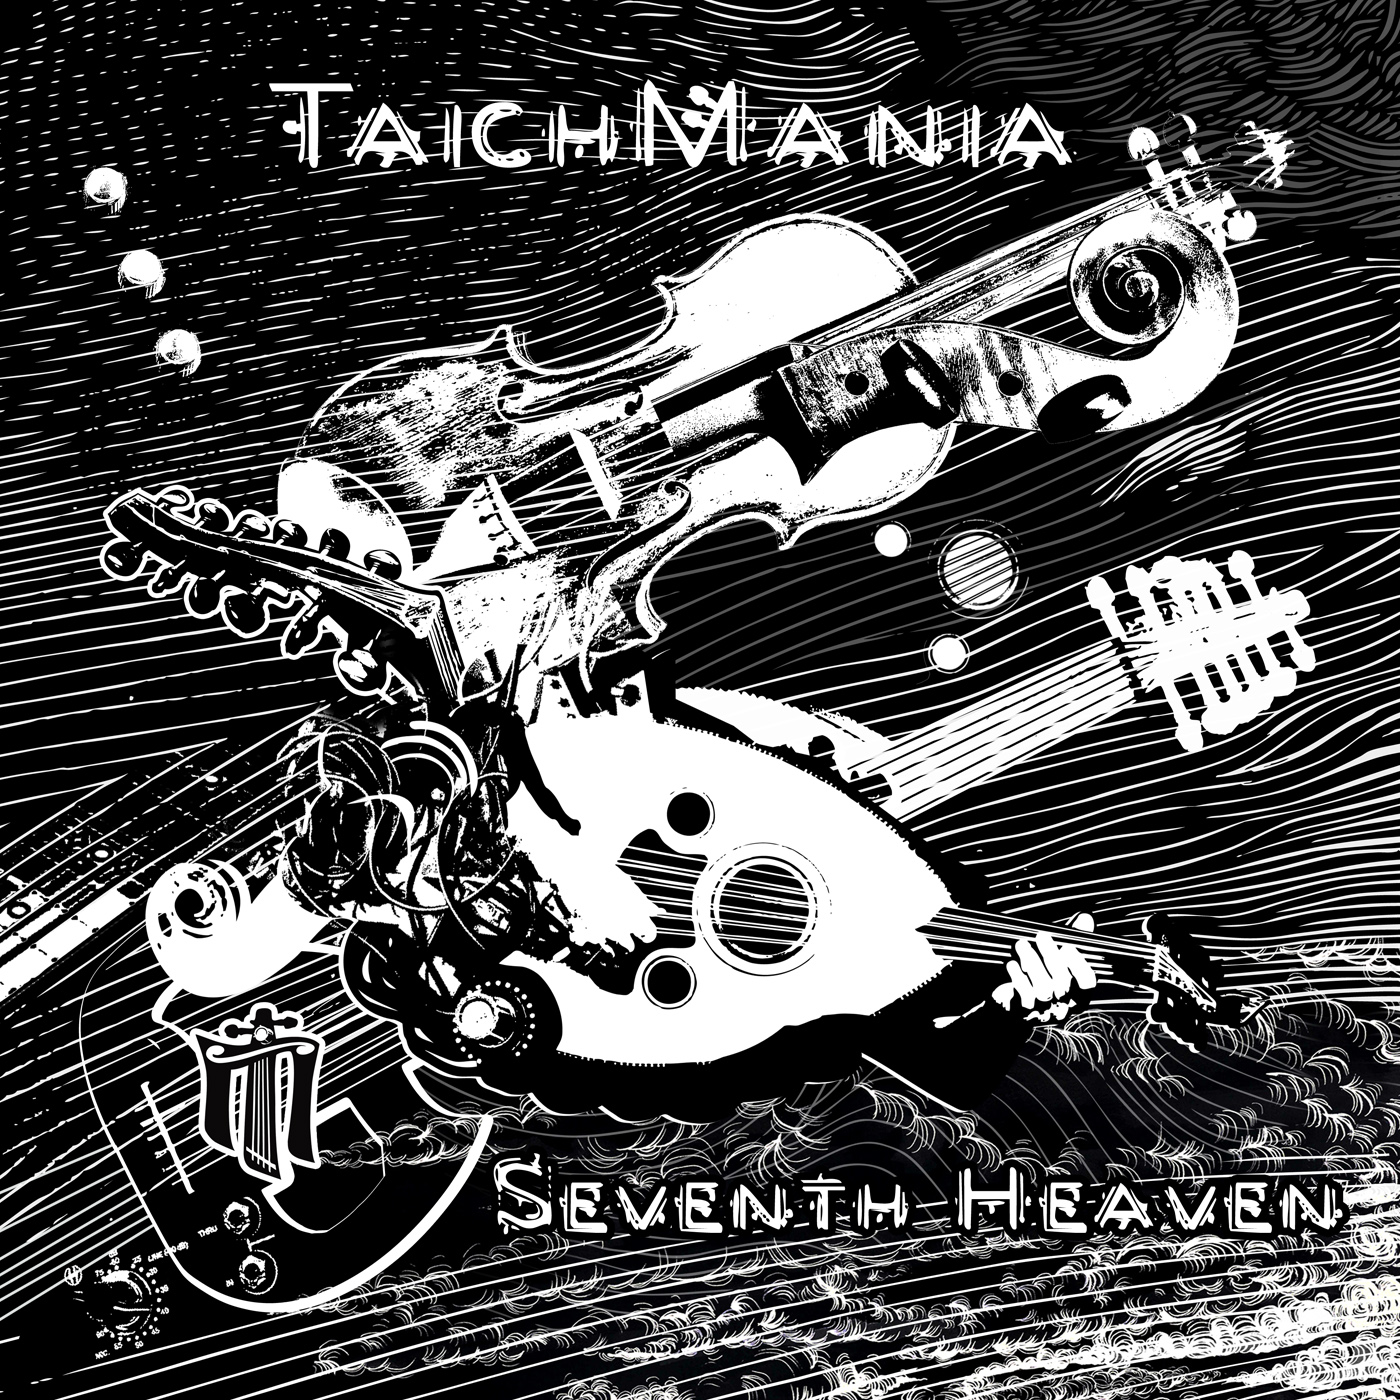 Taichmania - Seventh Heaven